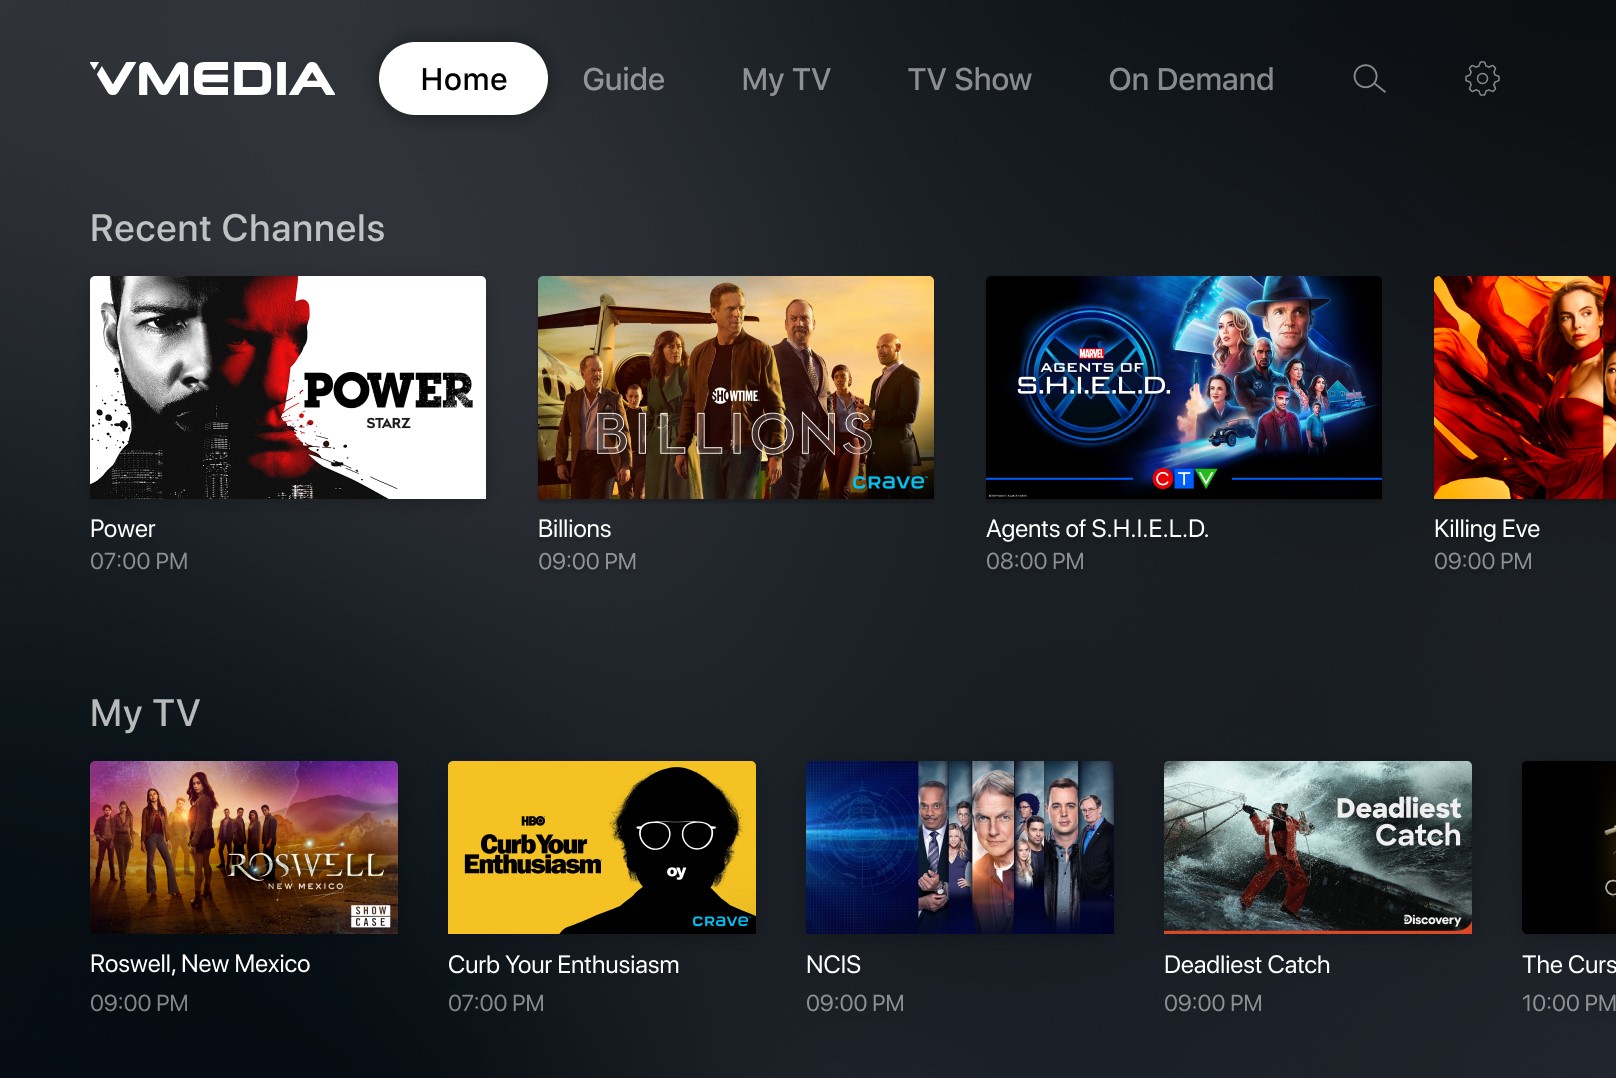 VMedia TV app launches on Apple TV 4K